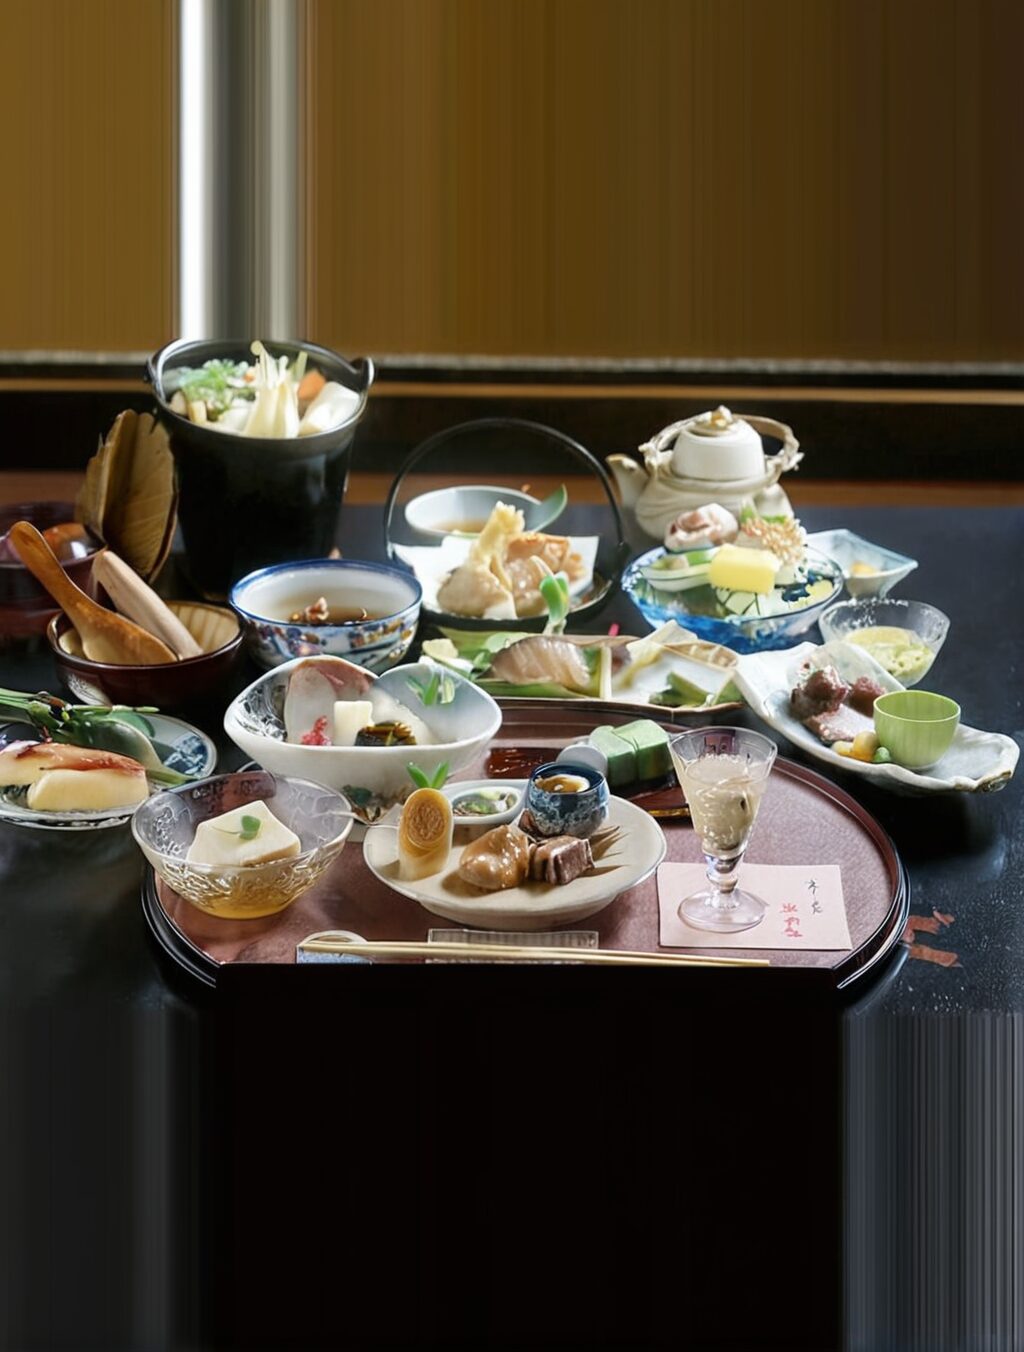 food to eat in nara japan